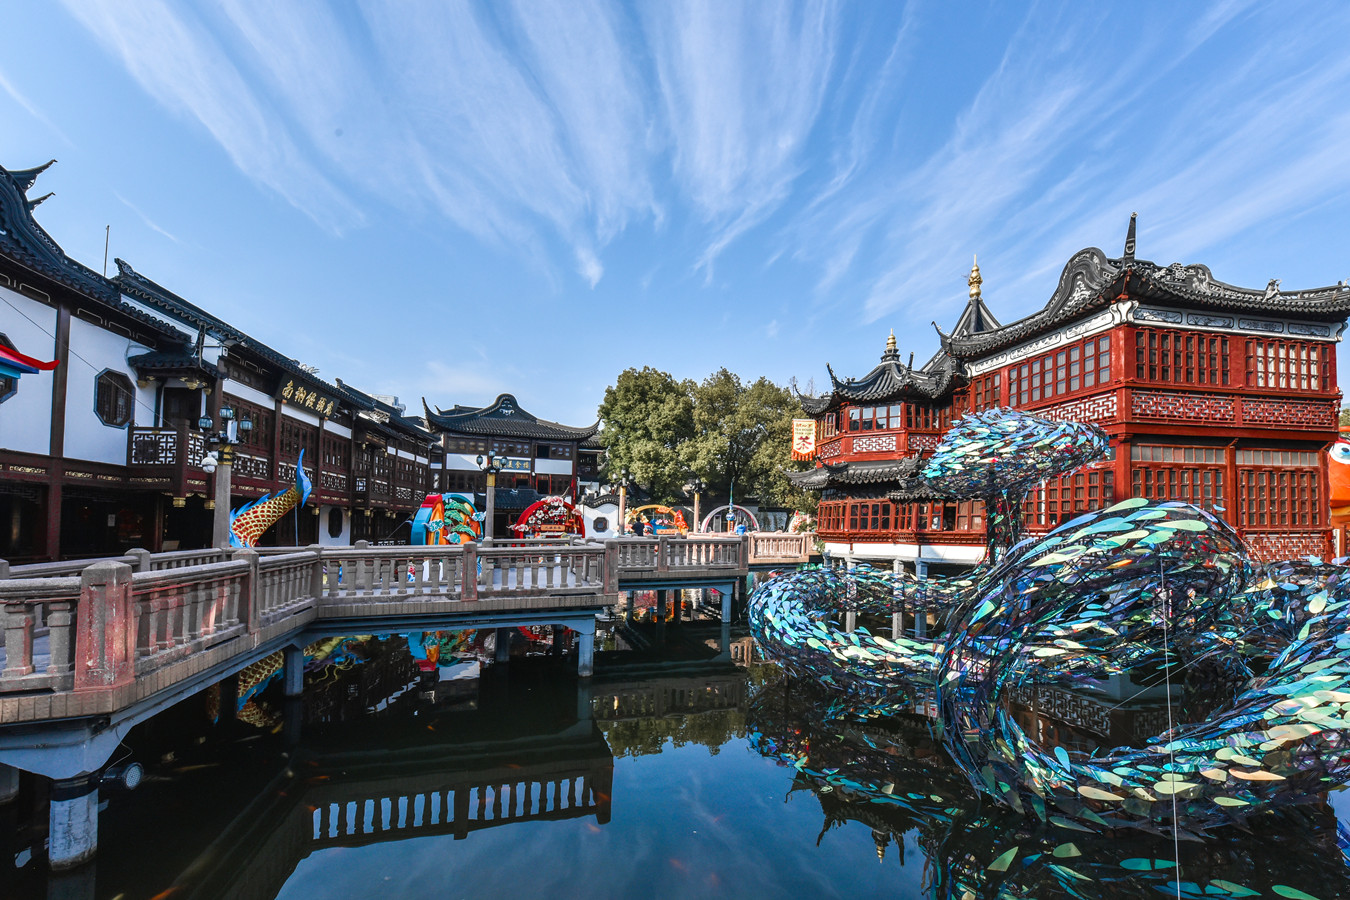 ★ Tour Cina Low Cost: alla Scoperta dell'Antica Pechino e della Moderna Shanghai